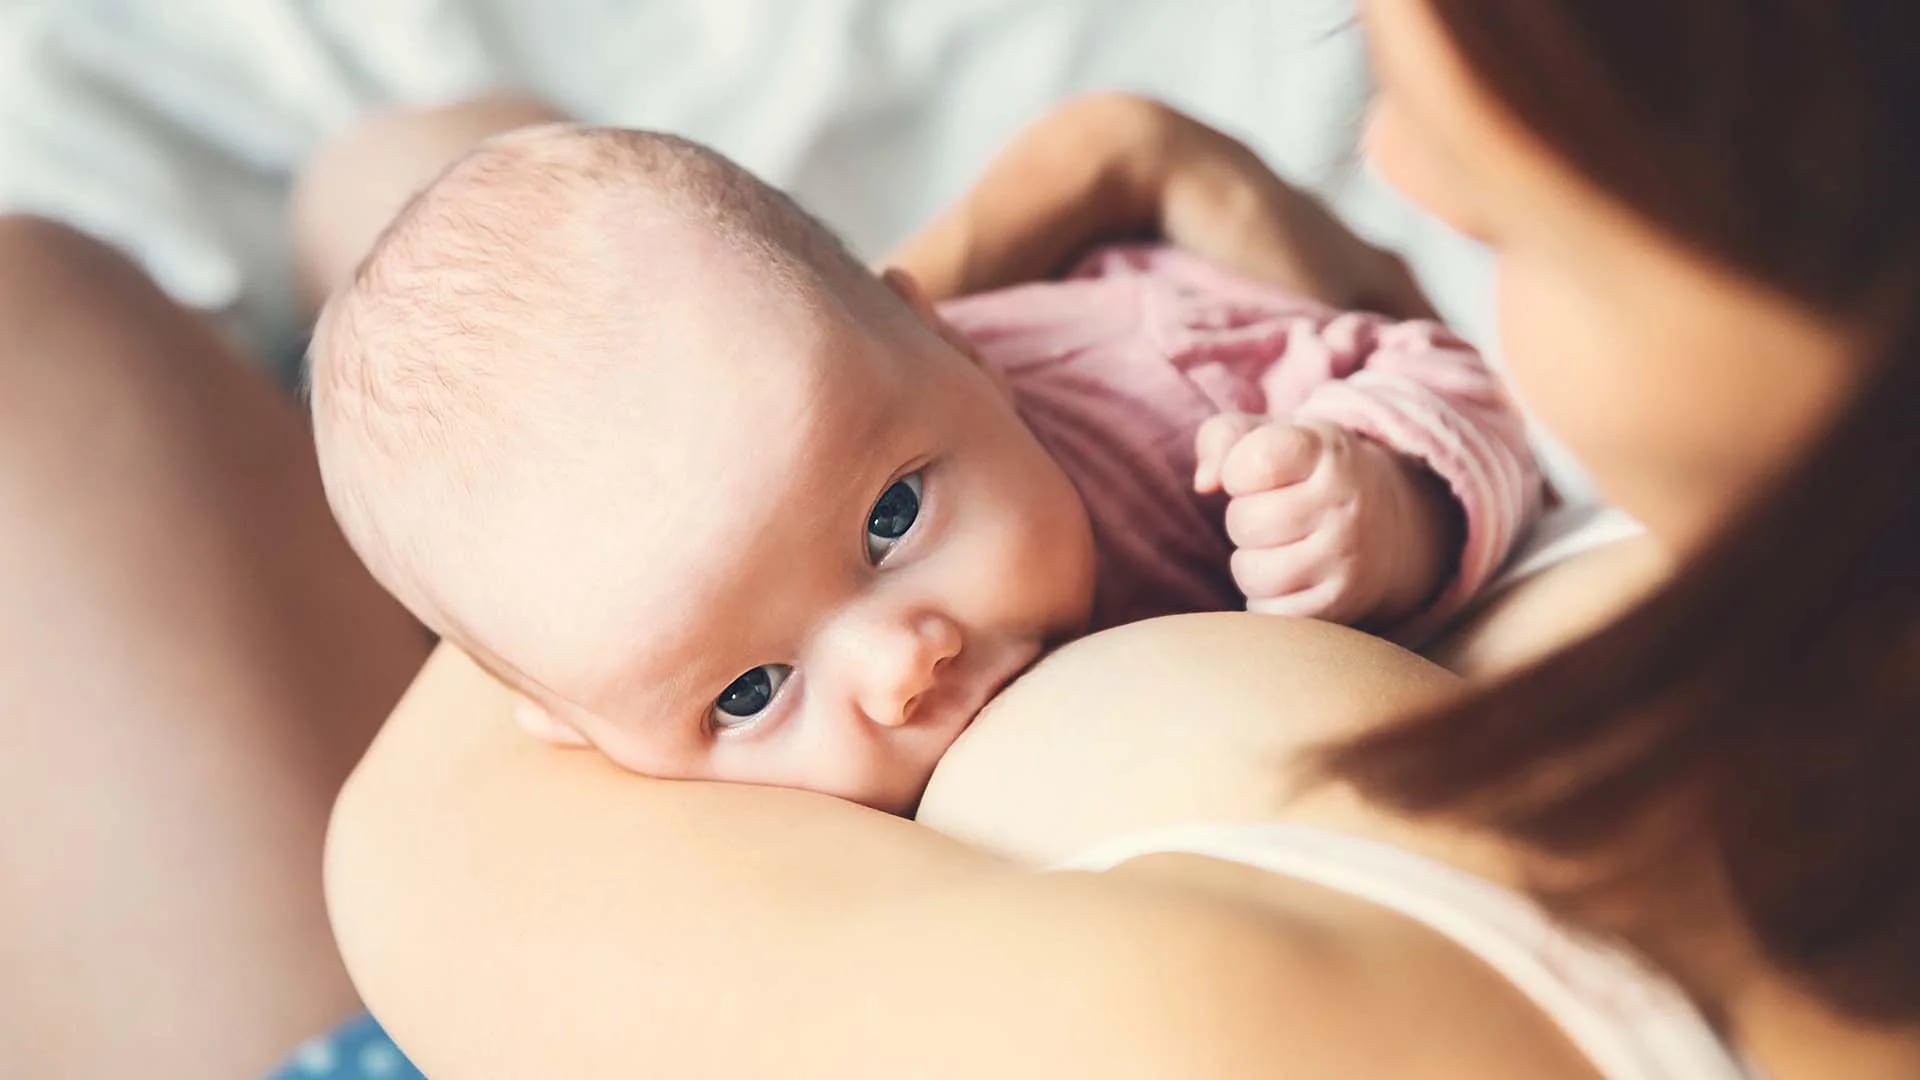 La leche materna contiene células del sistema inmune y componentes de la microbiota intestinal maternas que se adaptan al intestino del bebé protegiéndolo (Shutterstock)